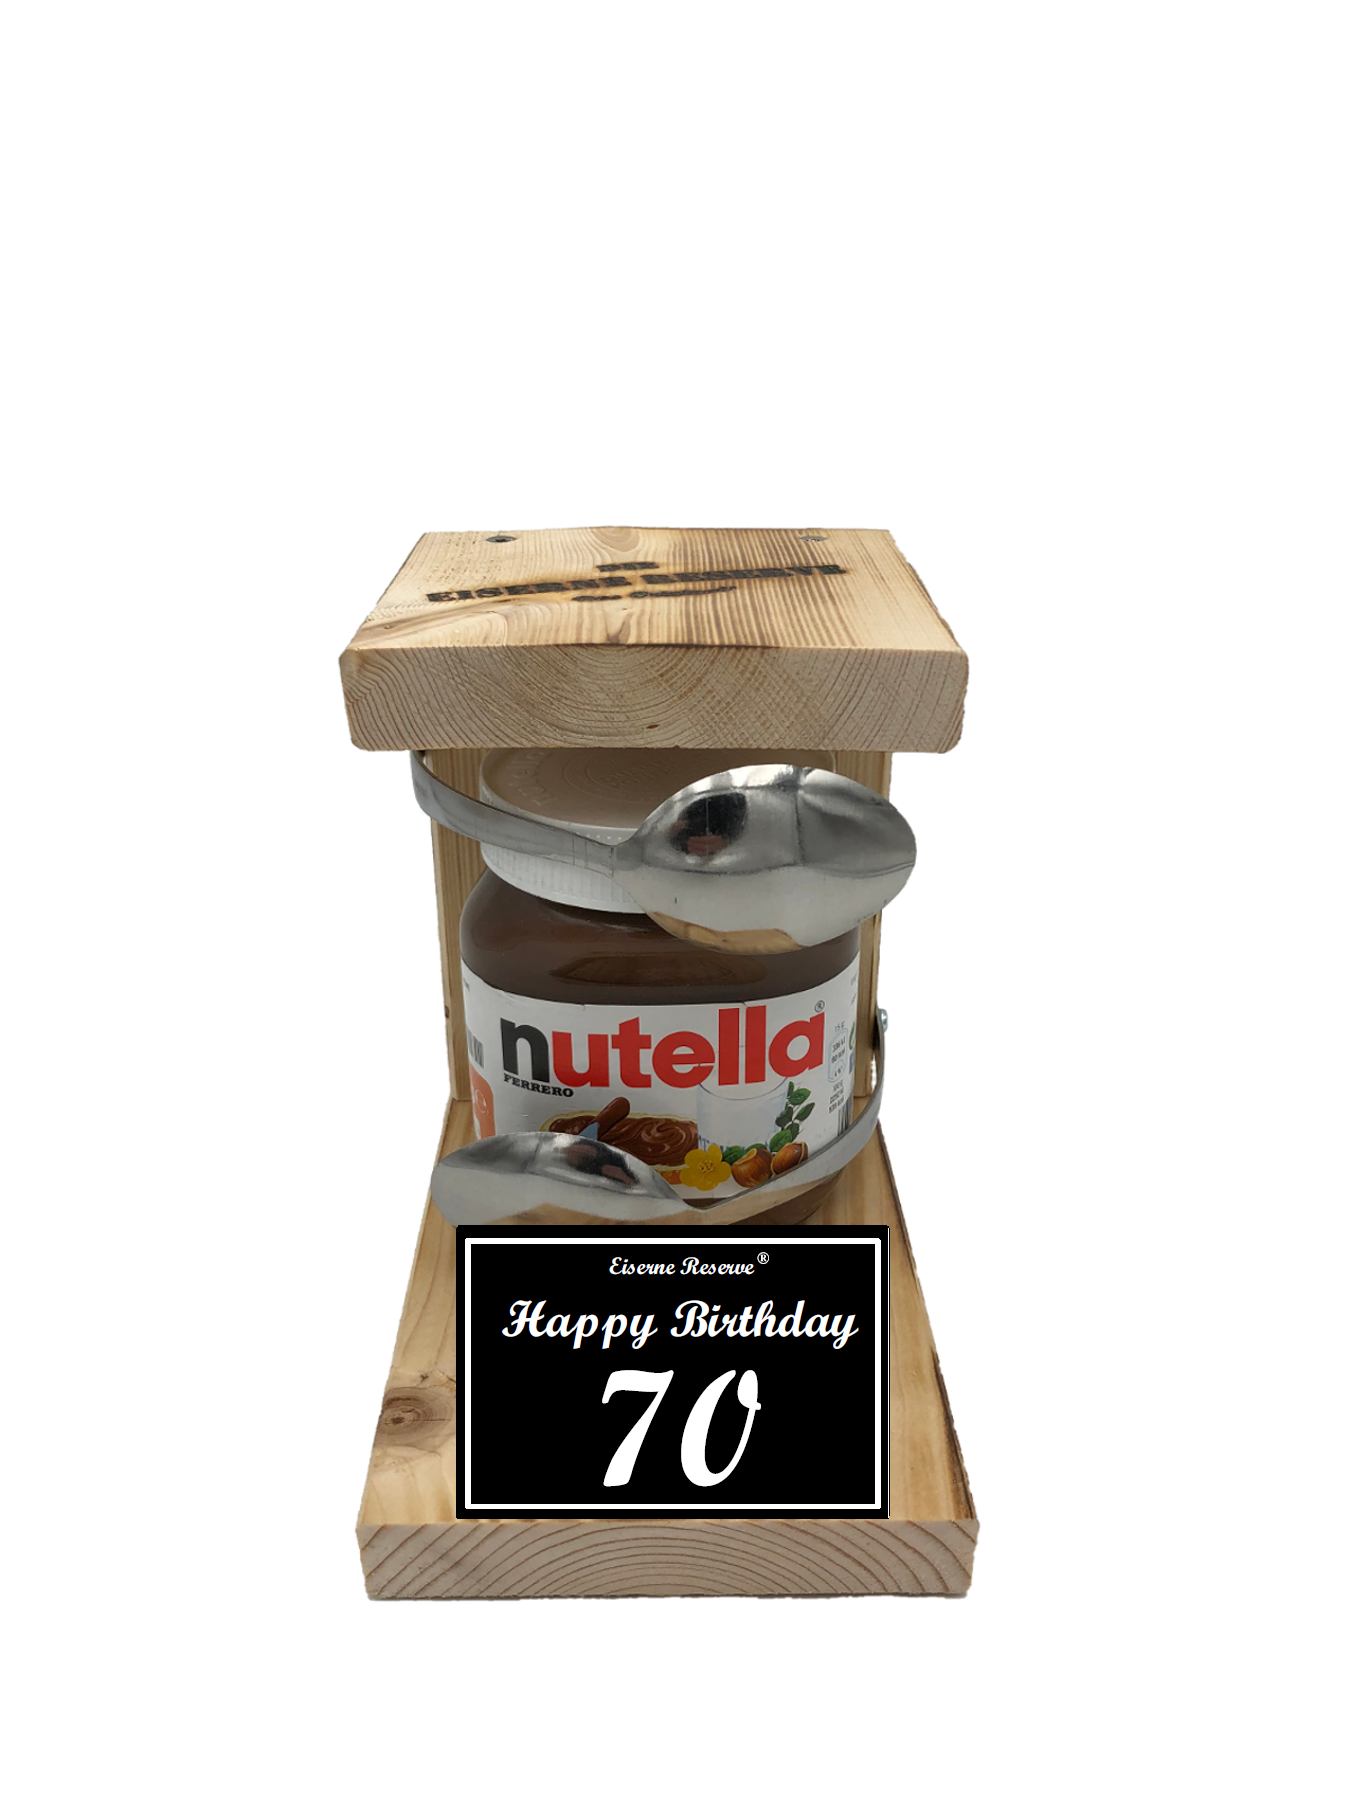 Geburtstag 70 - Eiserne Reserve Löffel Nutella - Geburtstag - Nutella Geschenk